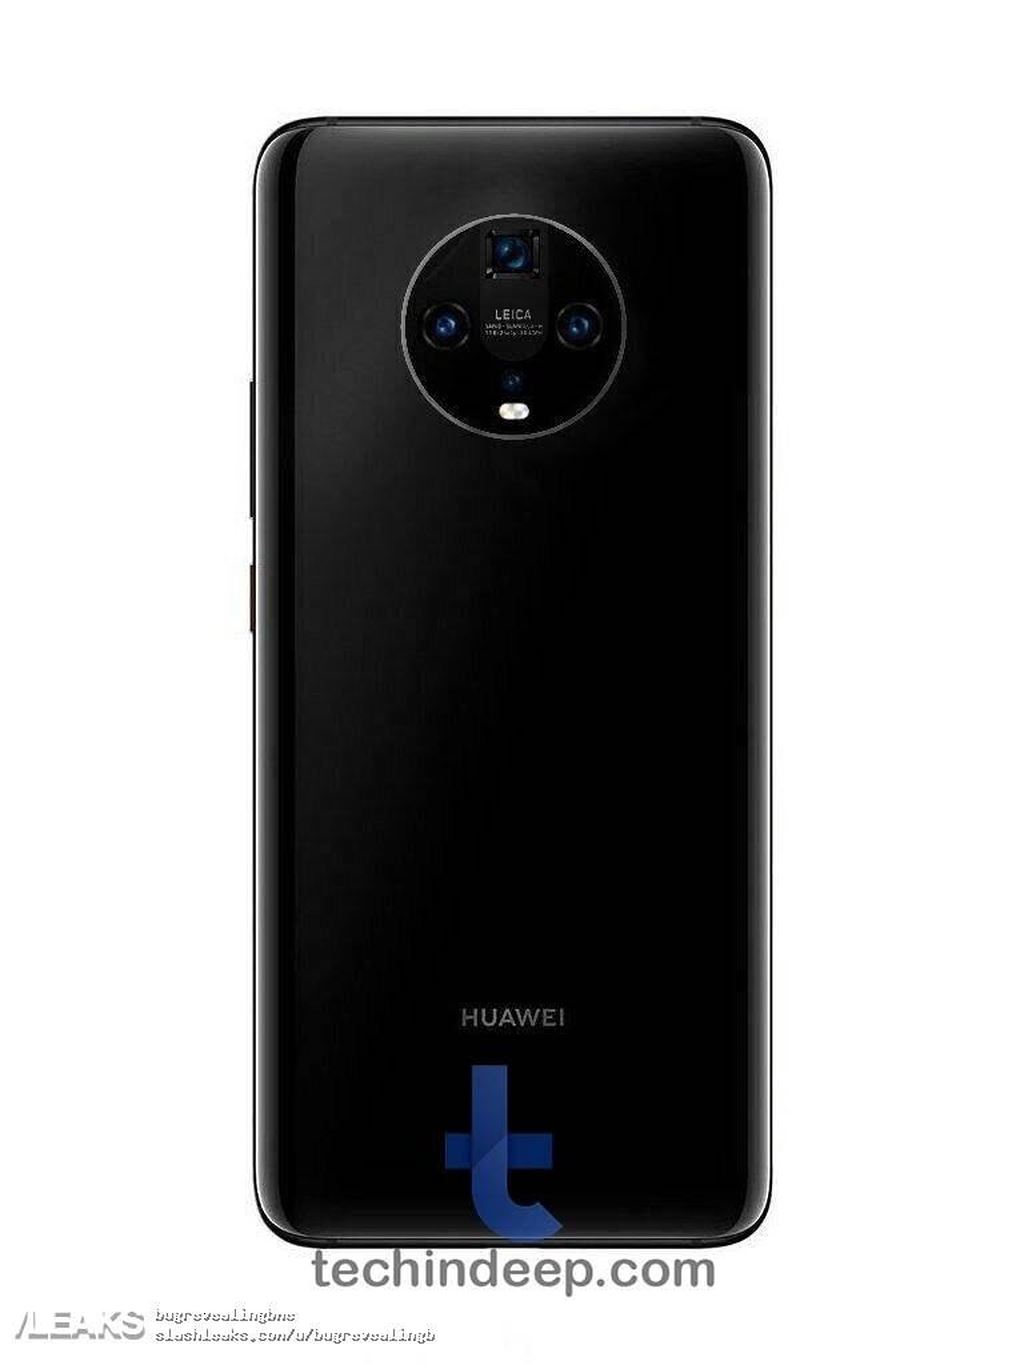 Huawei Mate 30 lộ ảnh render với cụm 4 camera hình tròn ảnh 1